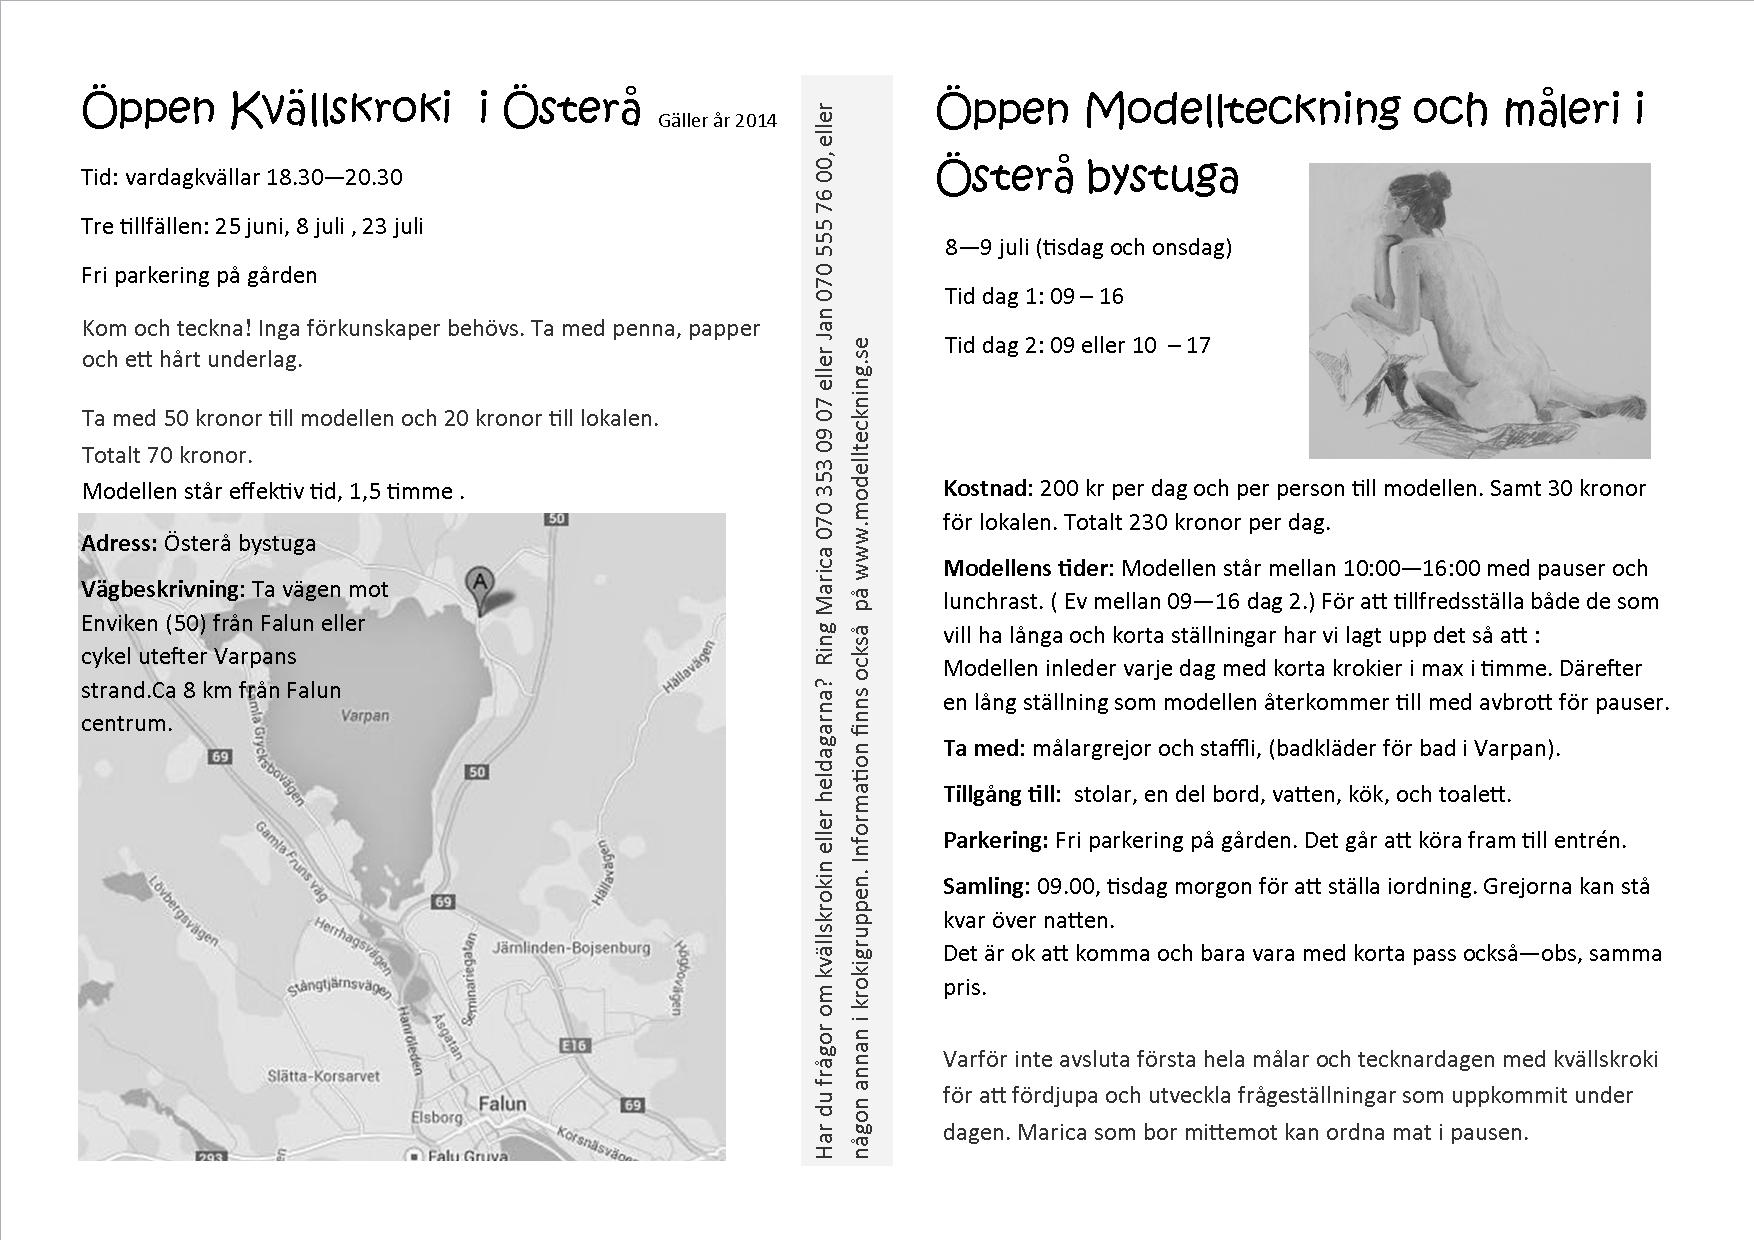 Öppen kvällskroki och modellmåleri - 2014 Program österåbystuga